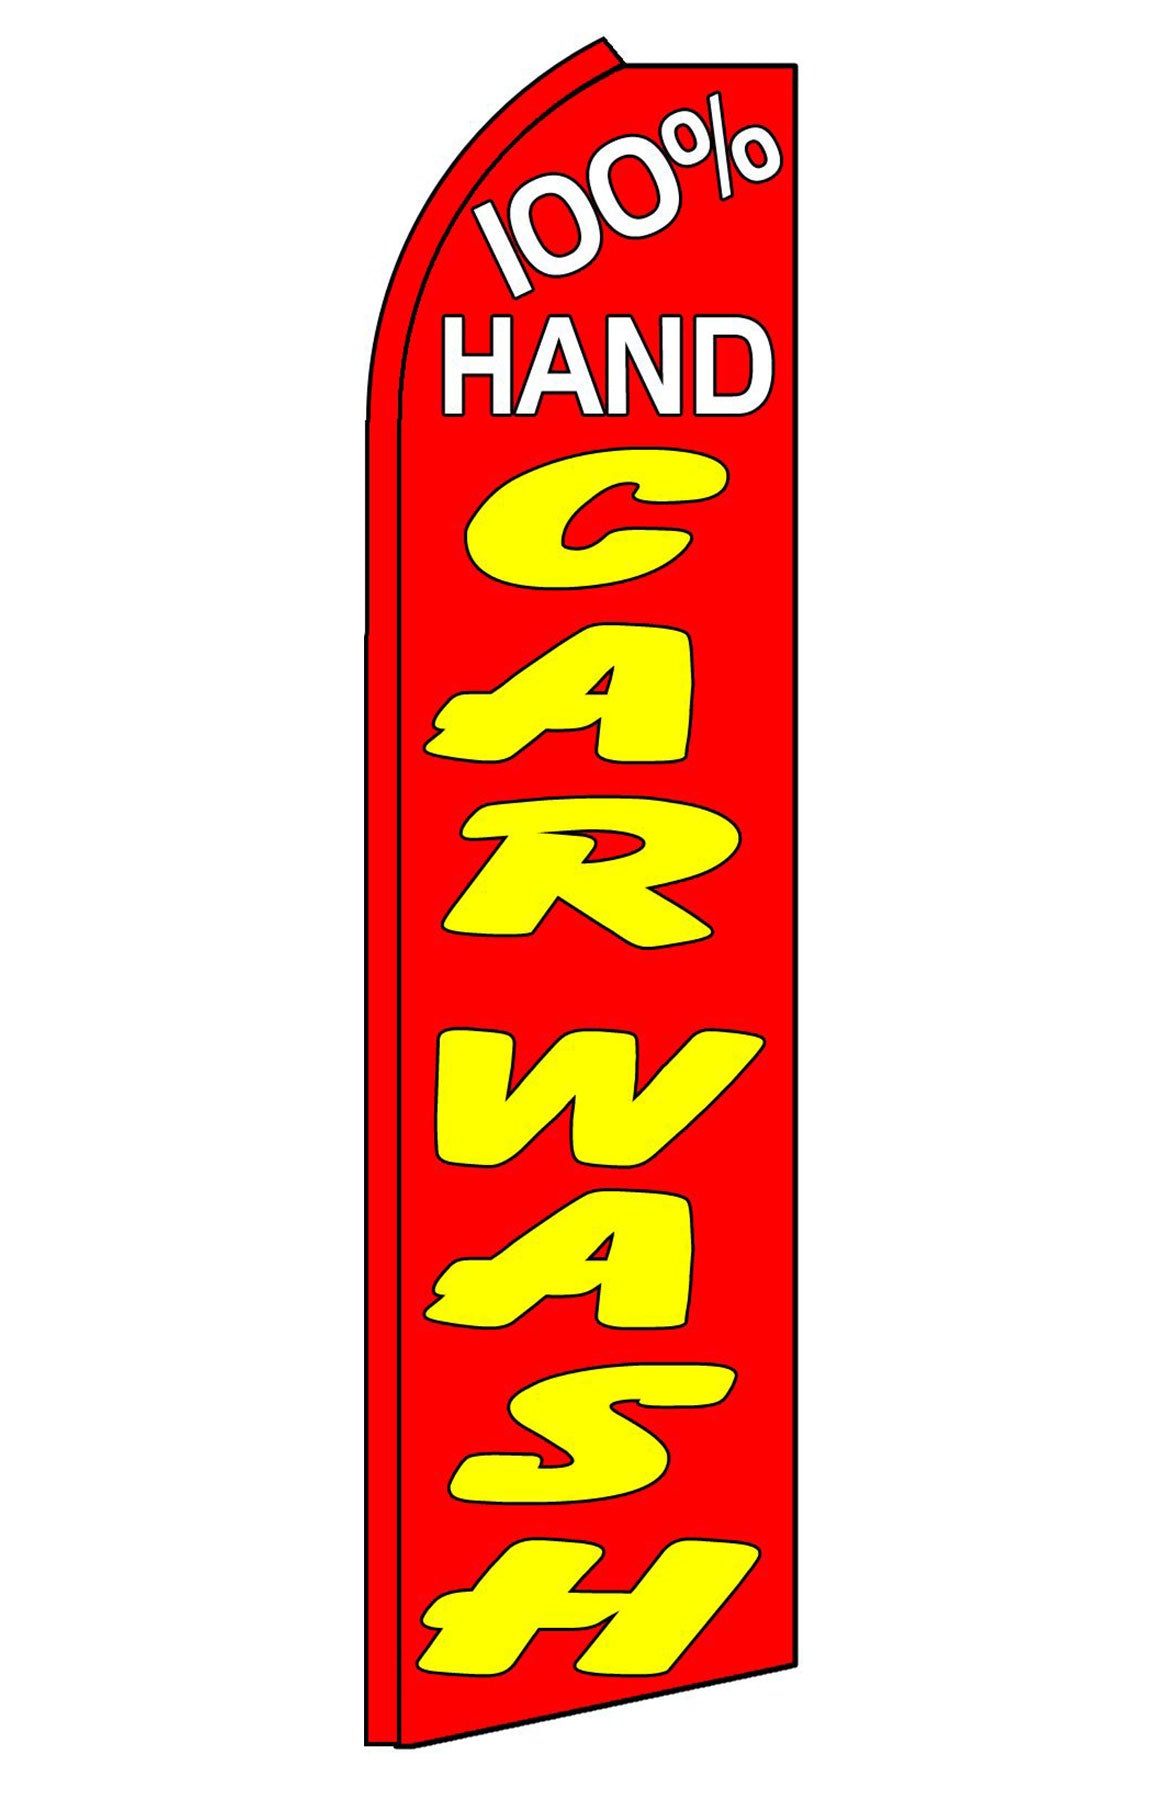 100% Hand Car Wash